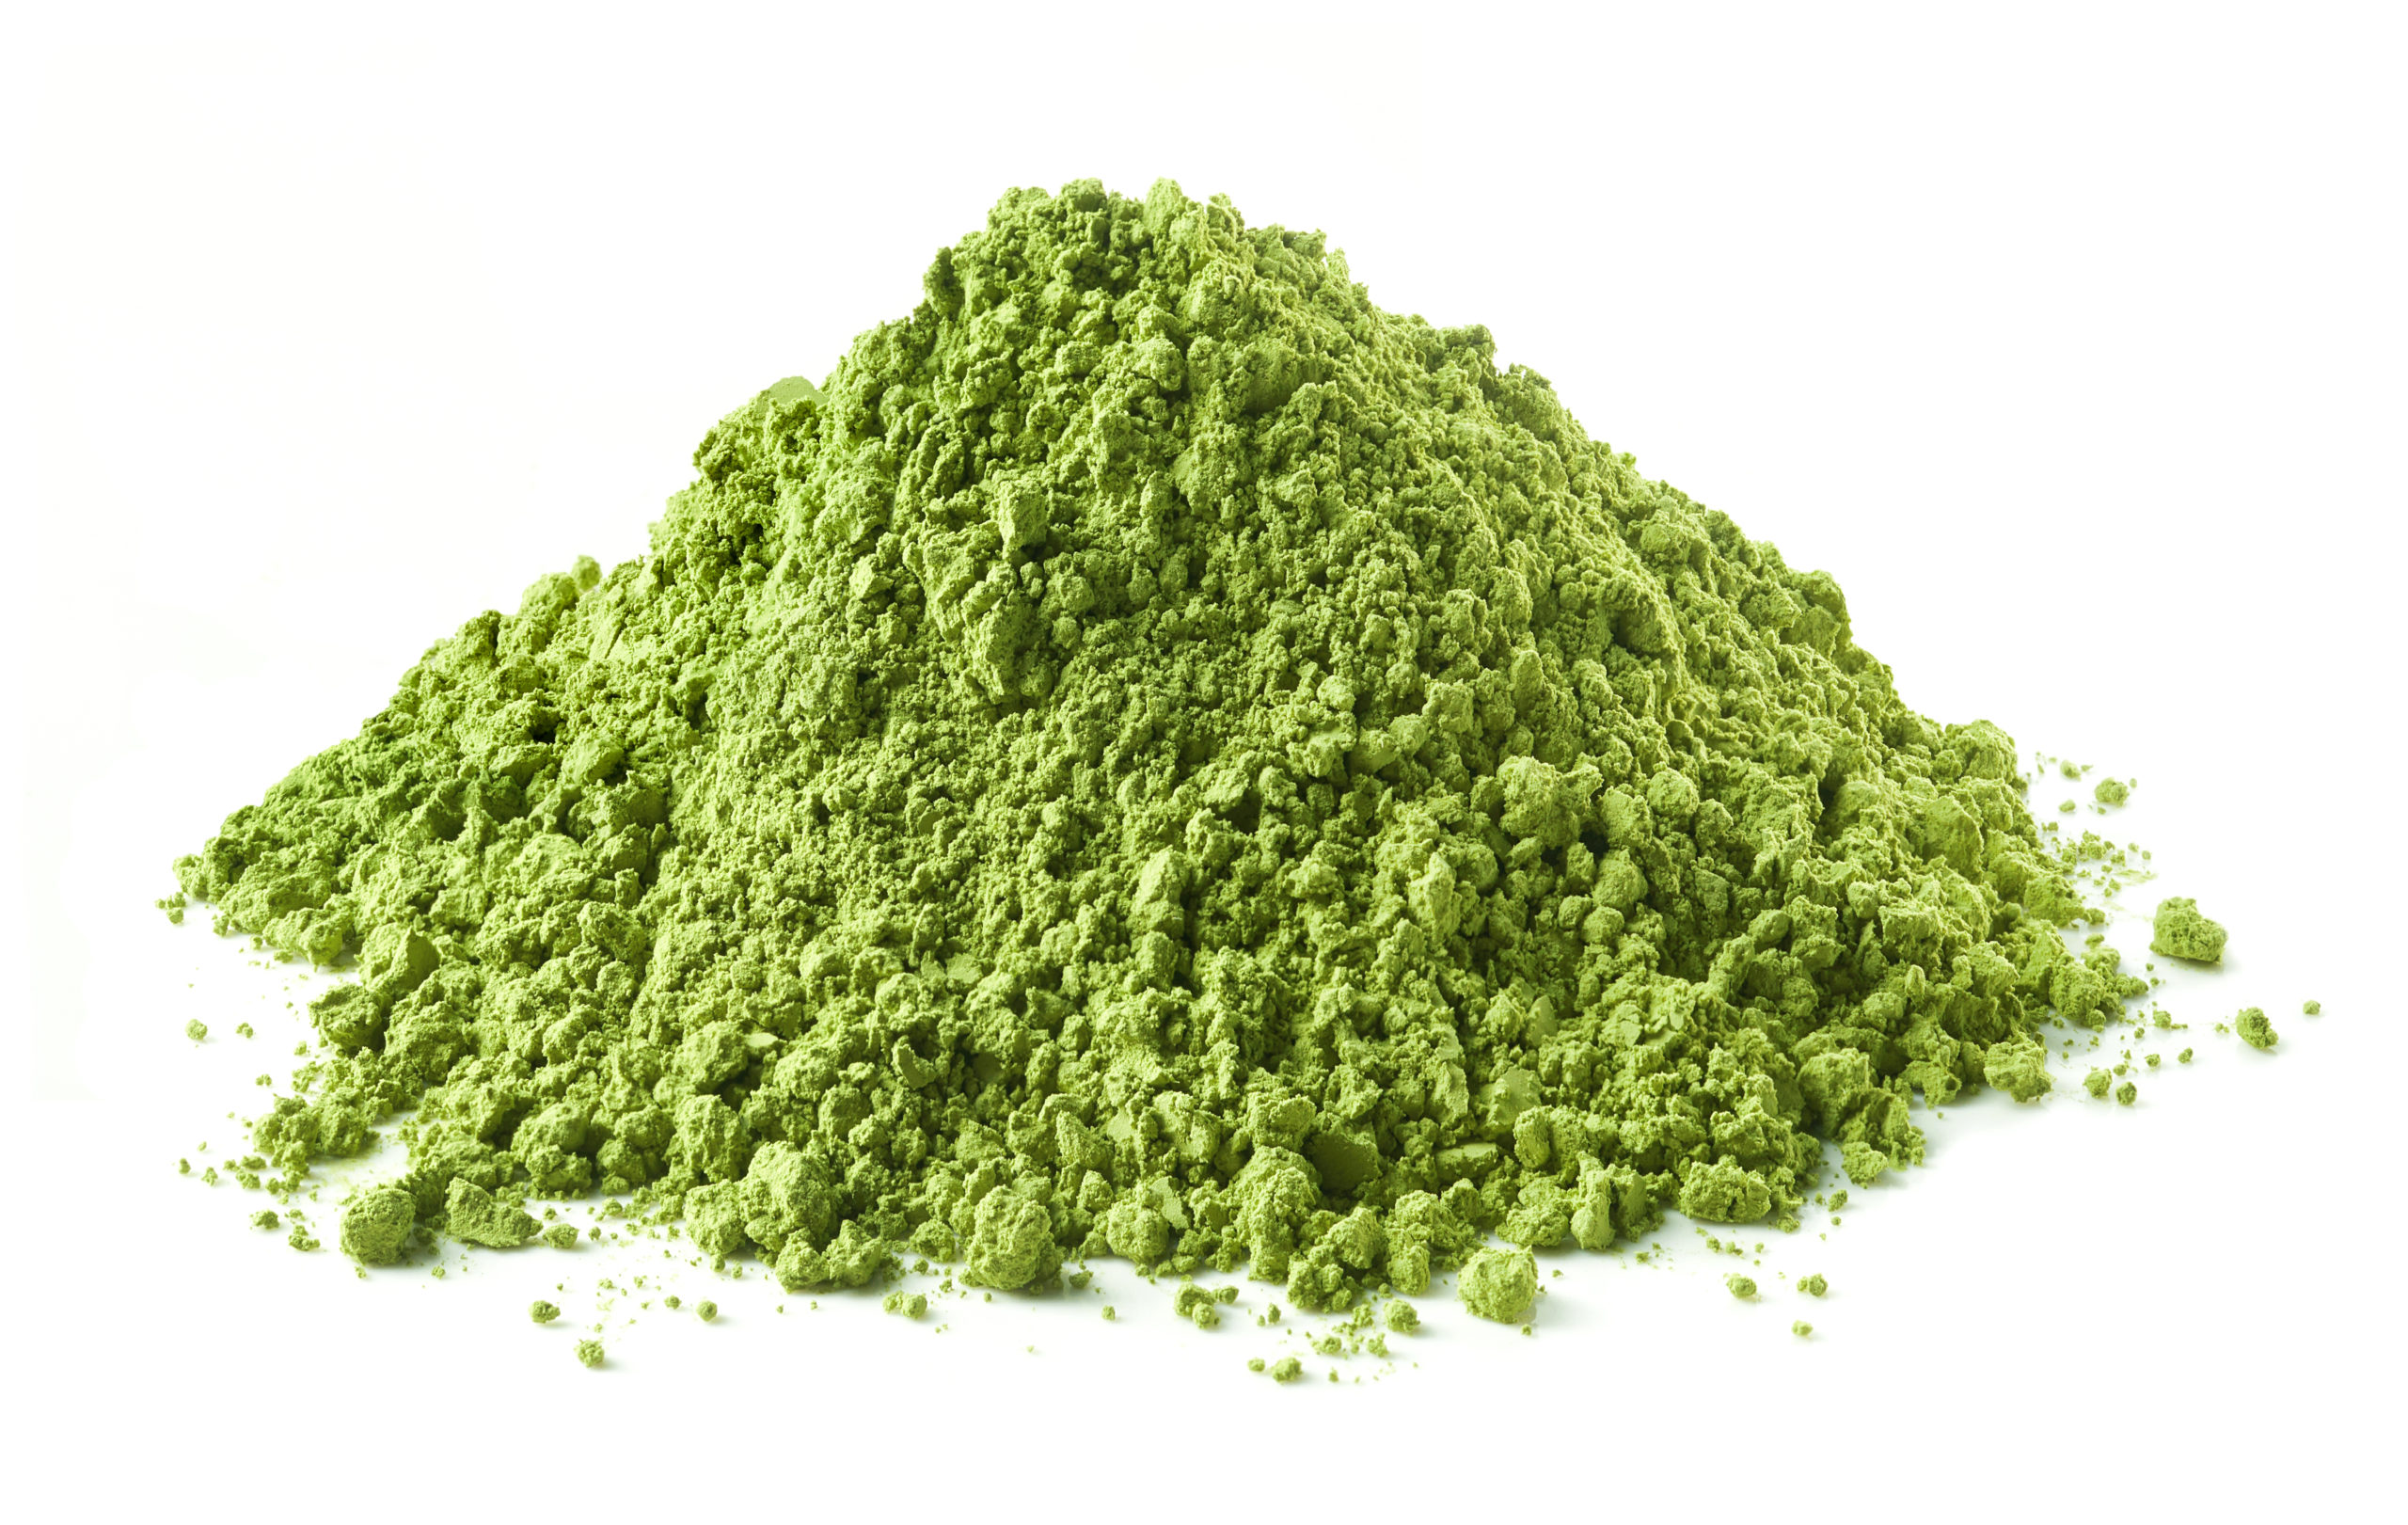 greens powder supplement